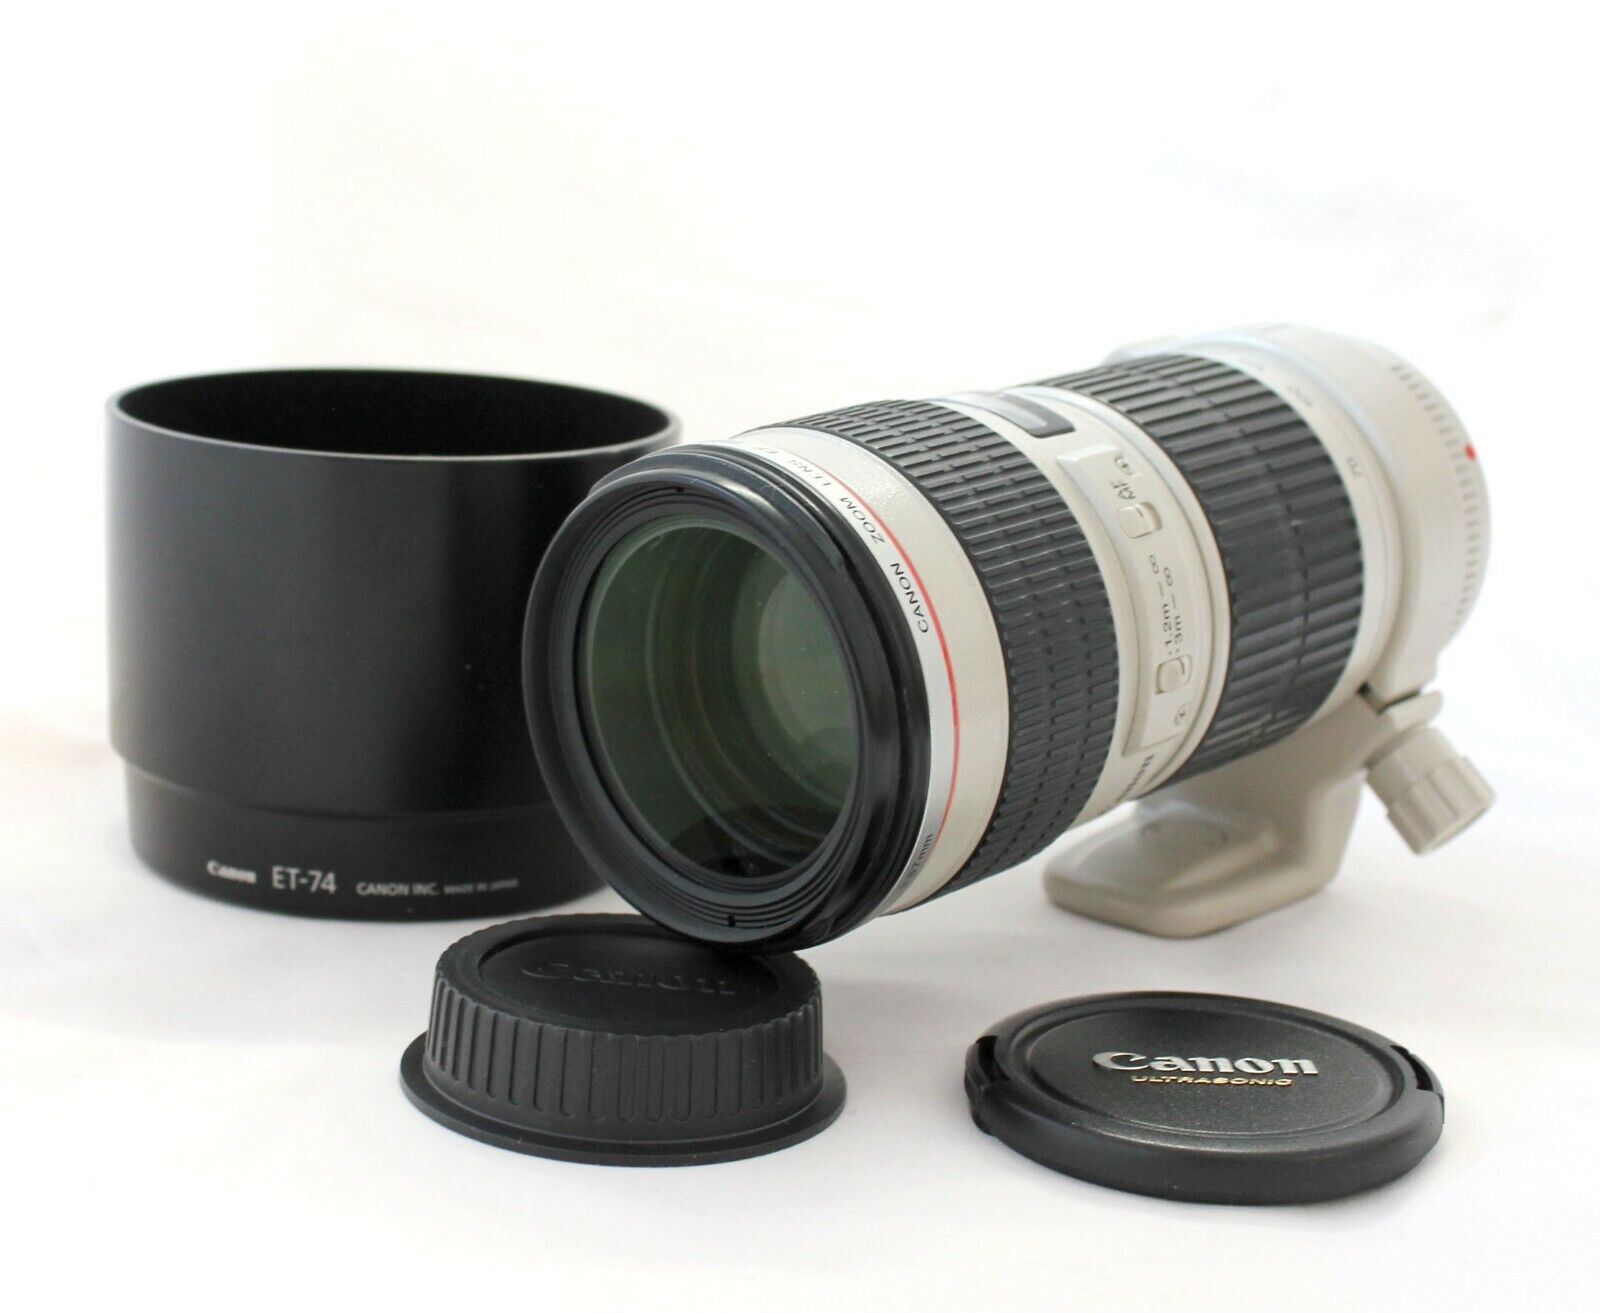 Near Mint] Canon EF 70-200mm F/4 L USM AF Zoom Lens with Hood ET 